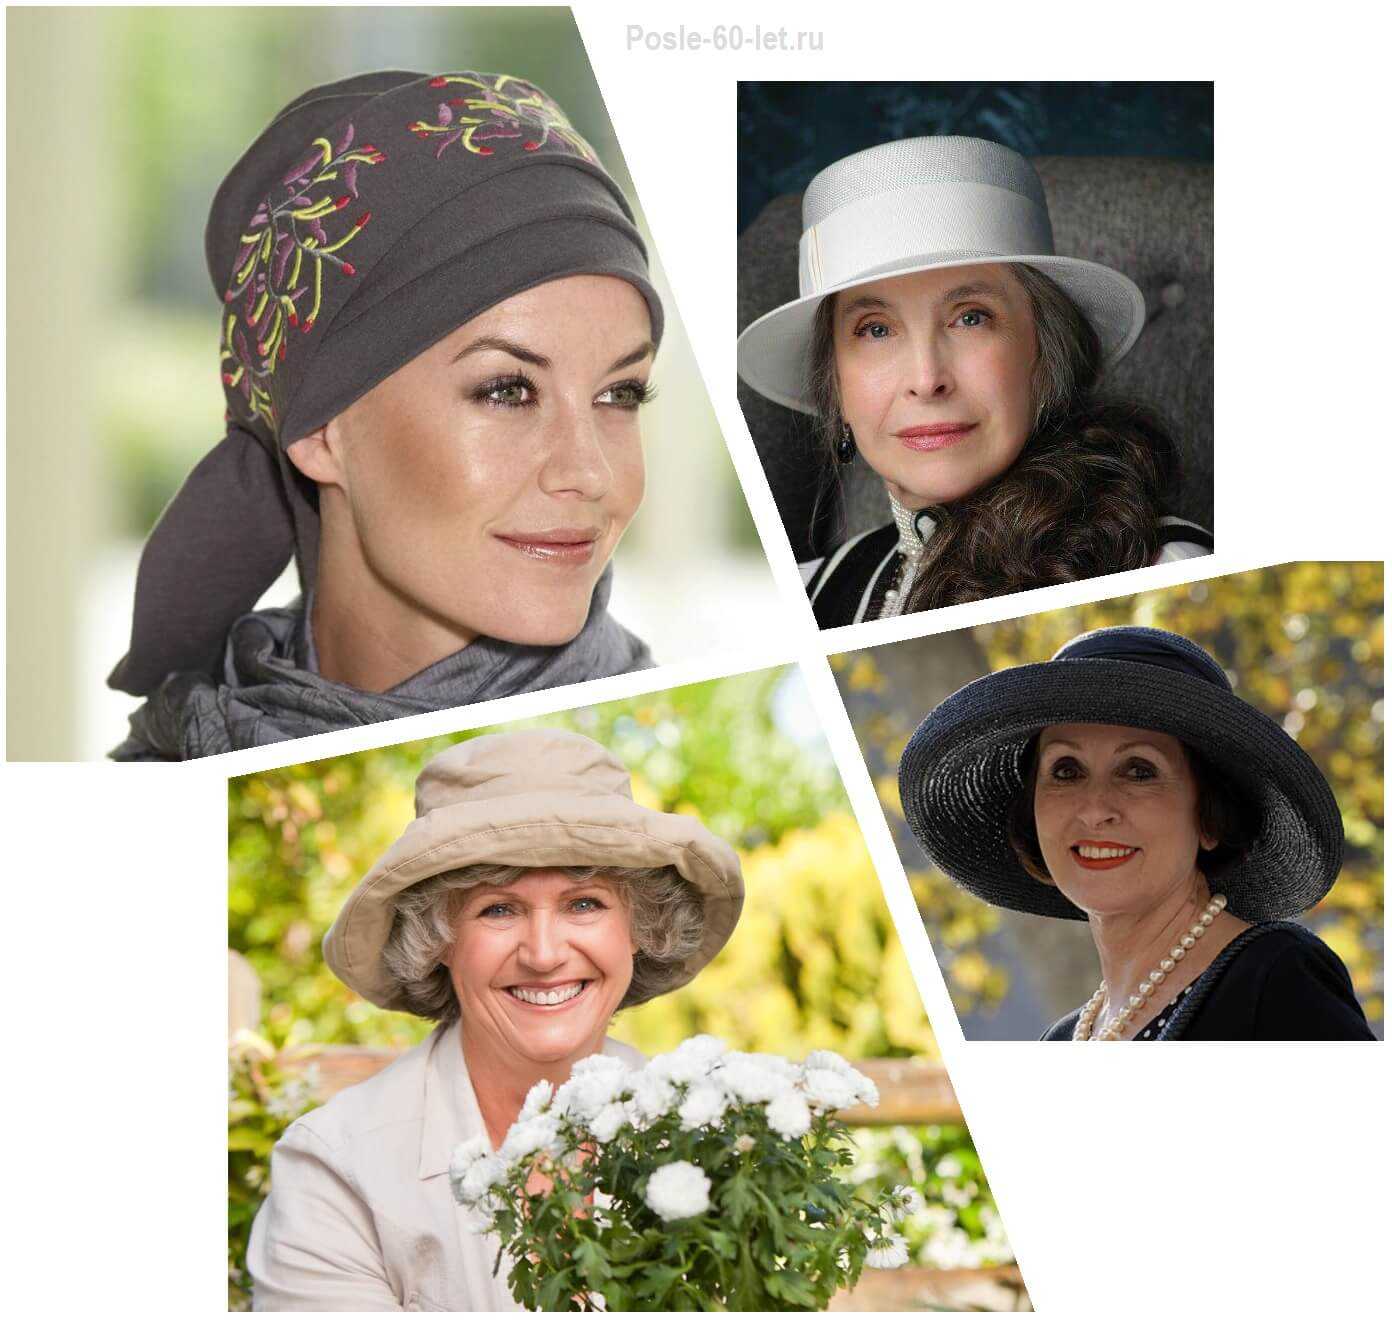 Летние головные уборы для пожилых женщин фото